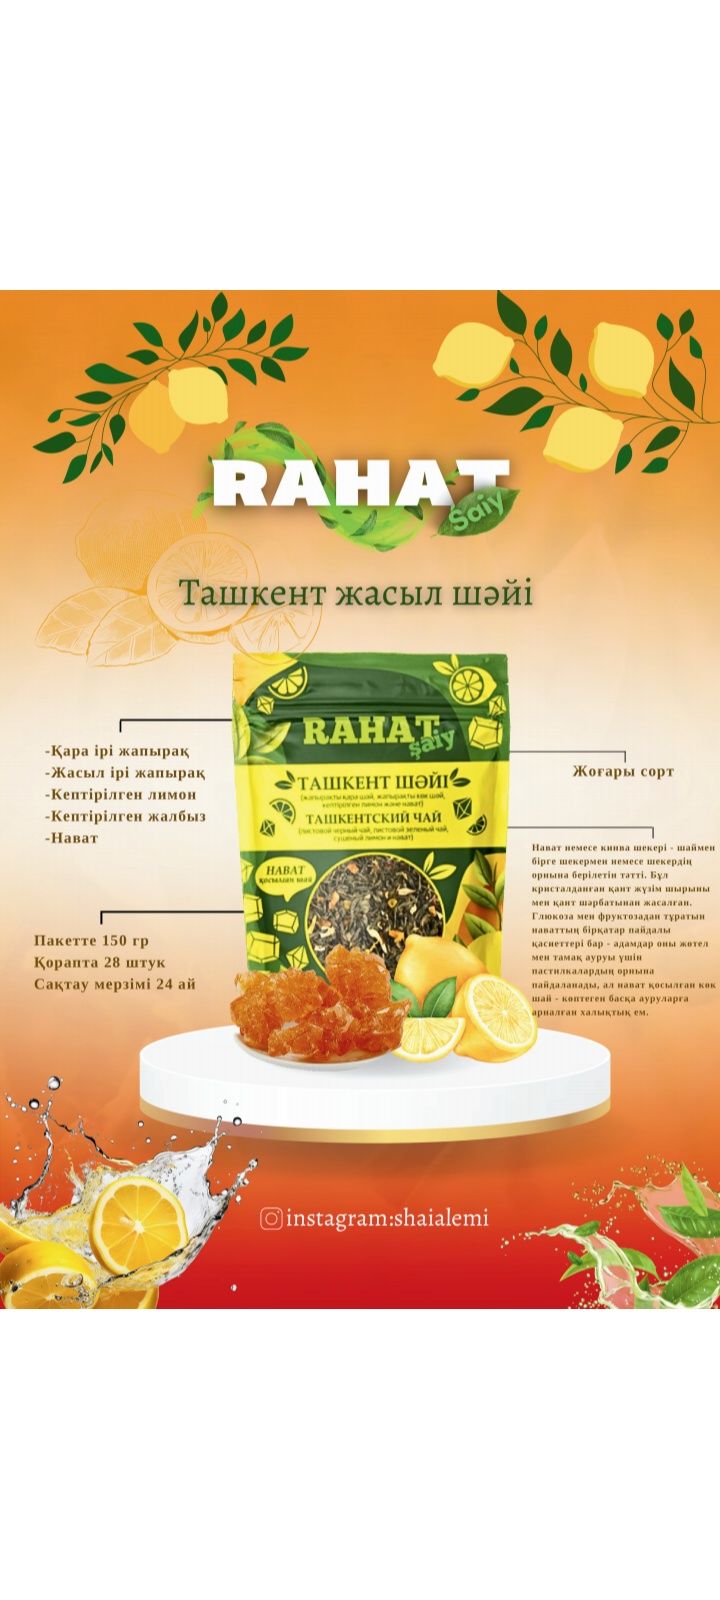 Чай ташкентский оптом есть несколько видов